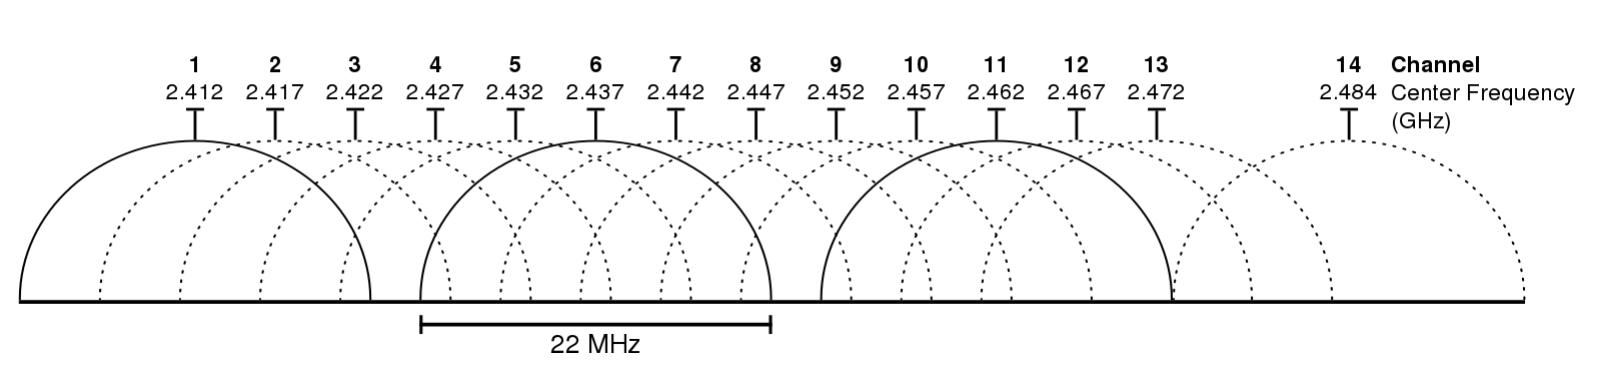 2.4 GHz Wi-Fi channels (802.11b,g WLAN) Source: https://en.wikipedia.org/wiki/List_of_WLAN_channels (CC BY-SA 3.0)